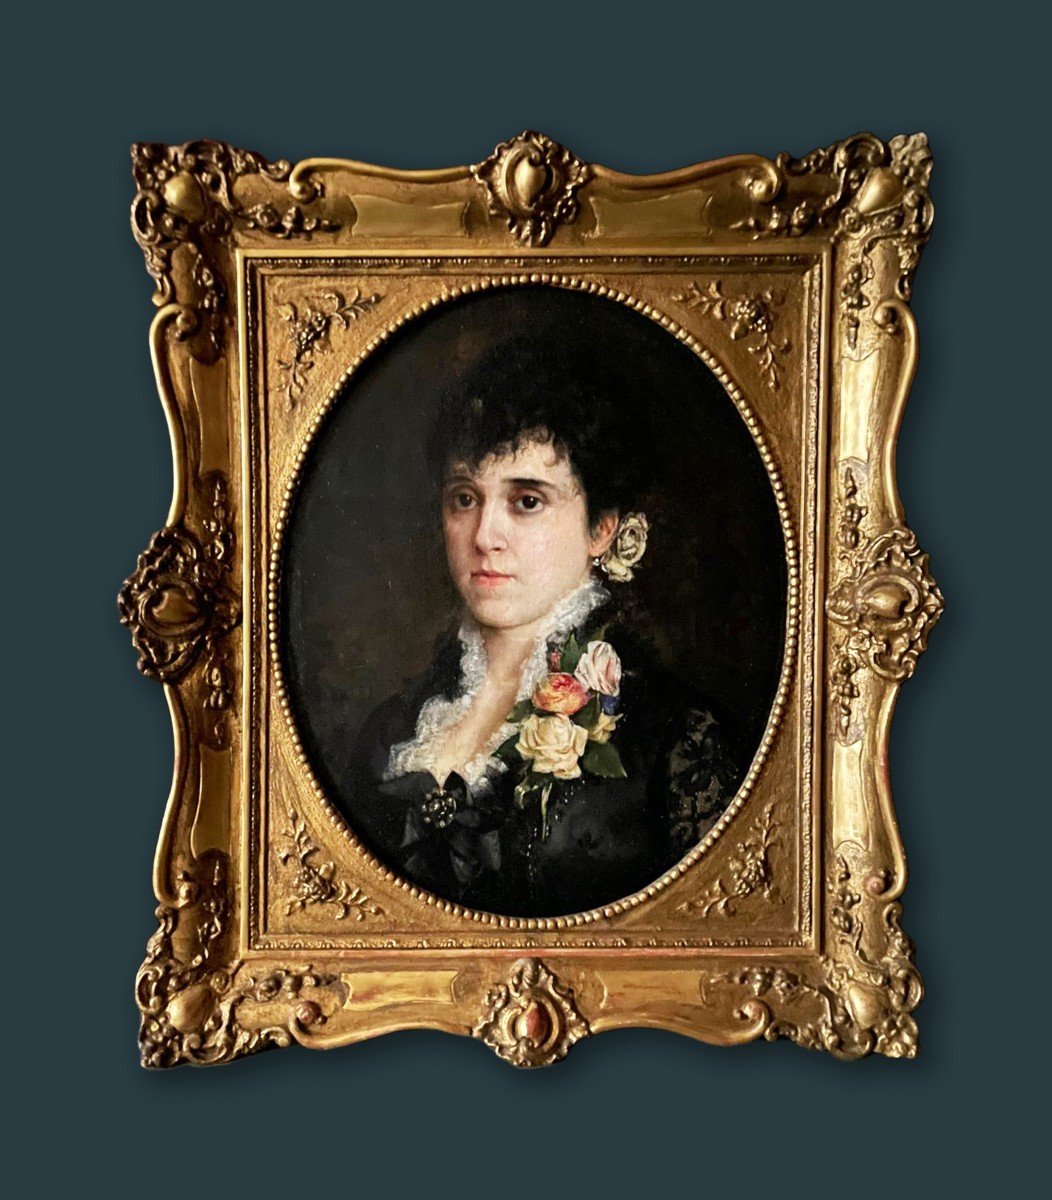 Ritratto di donna con rose - fine 1800